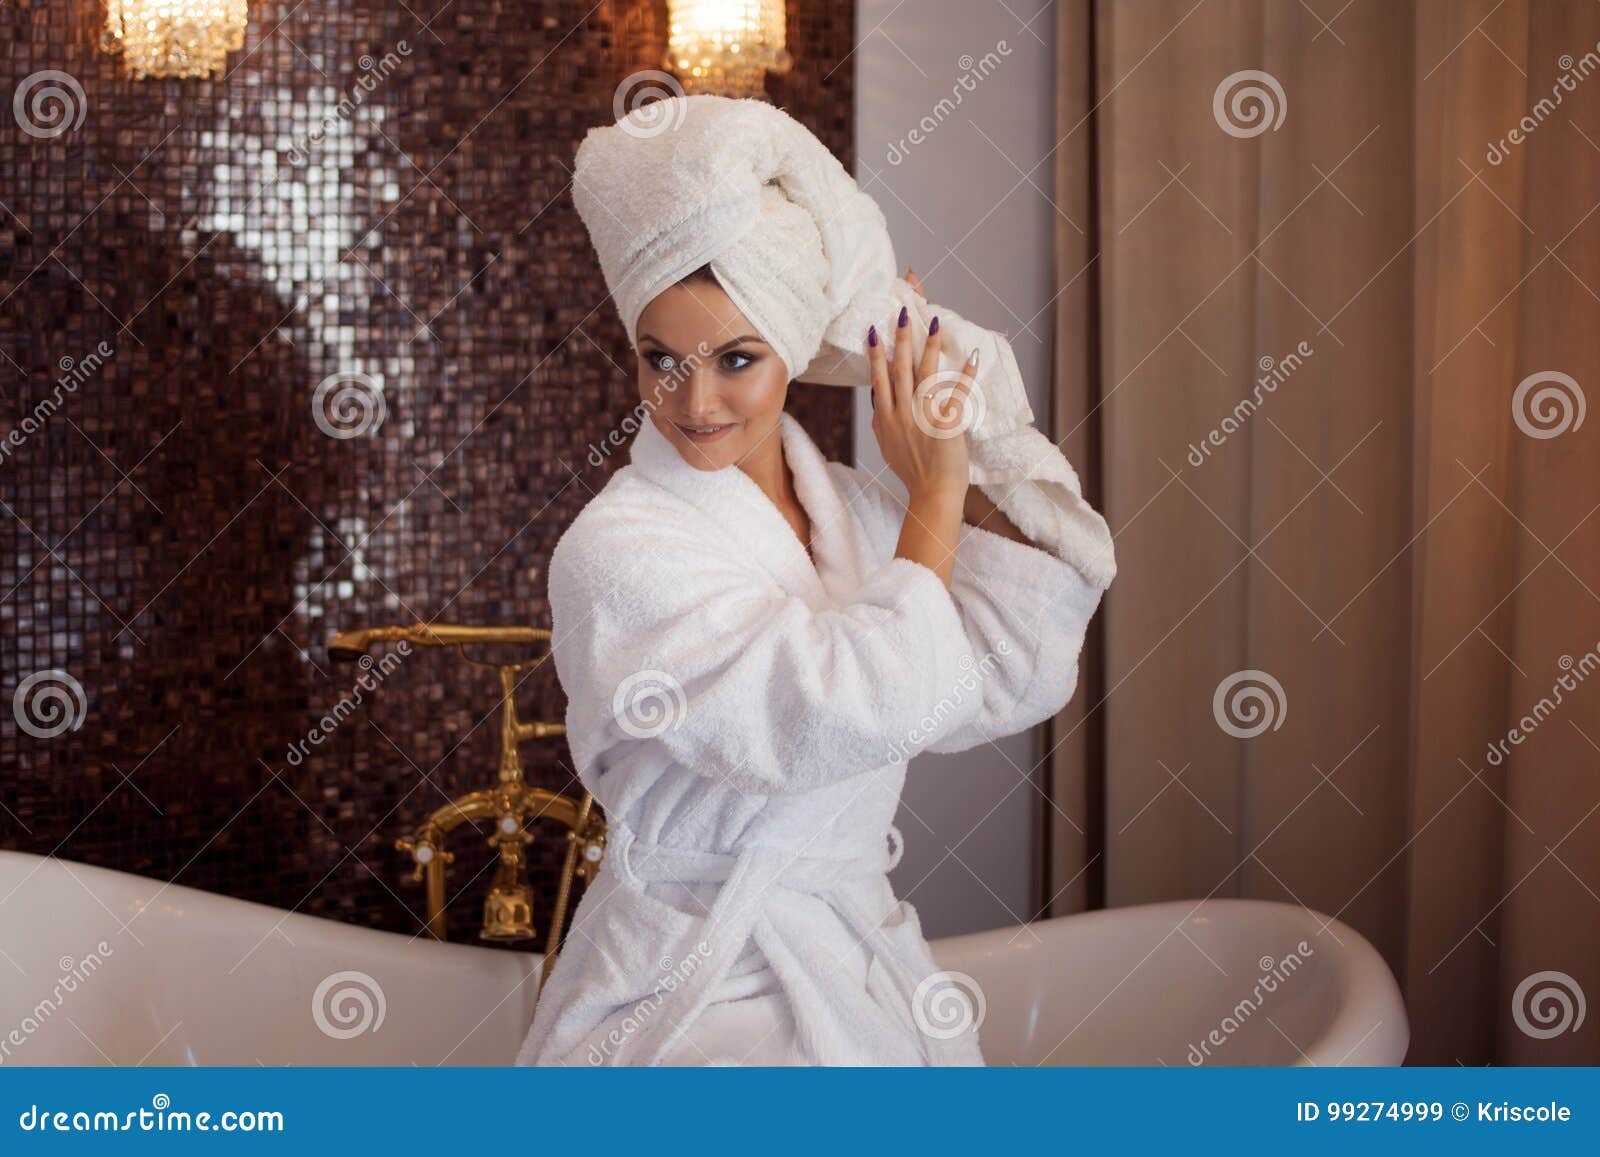 Сестра после ванны. Девушка в халате и полотенце на голове. Фотосессия в халате и полотенце. Девушка с полотенцем на голове. Девушка в халате ванна.